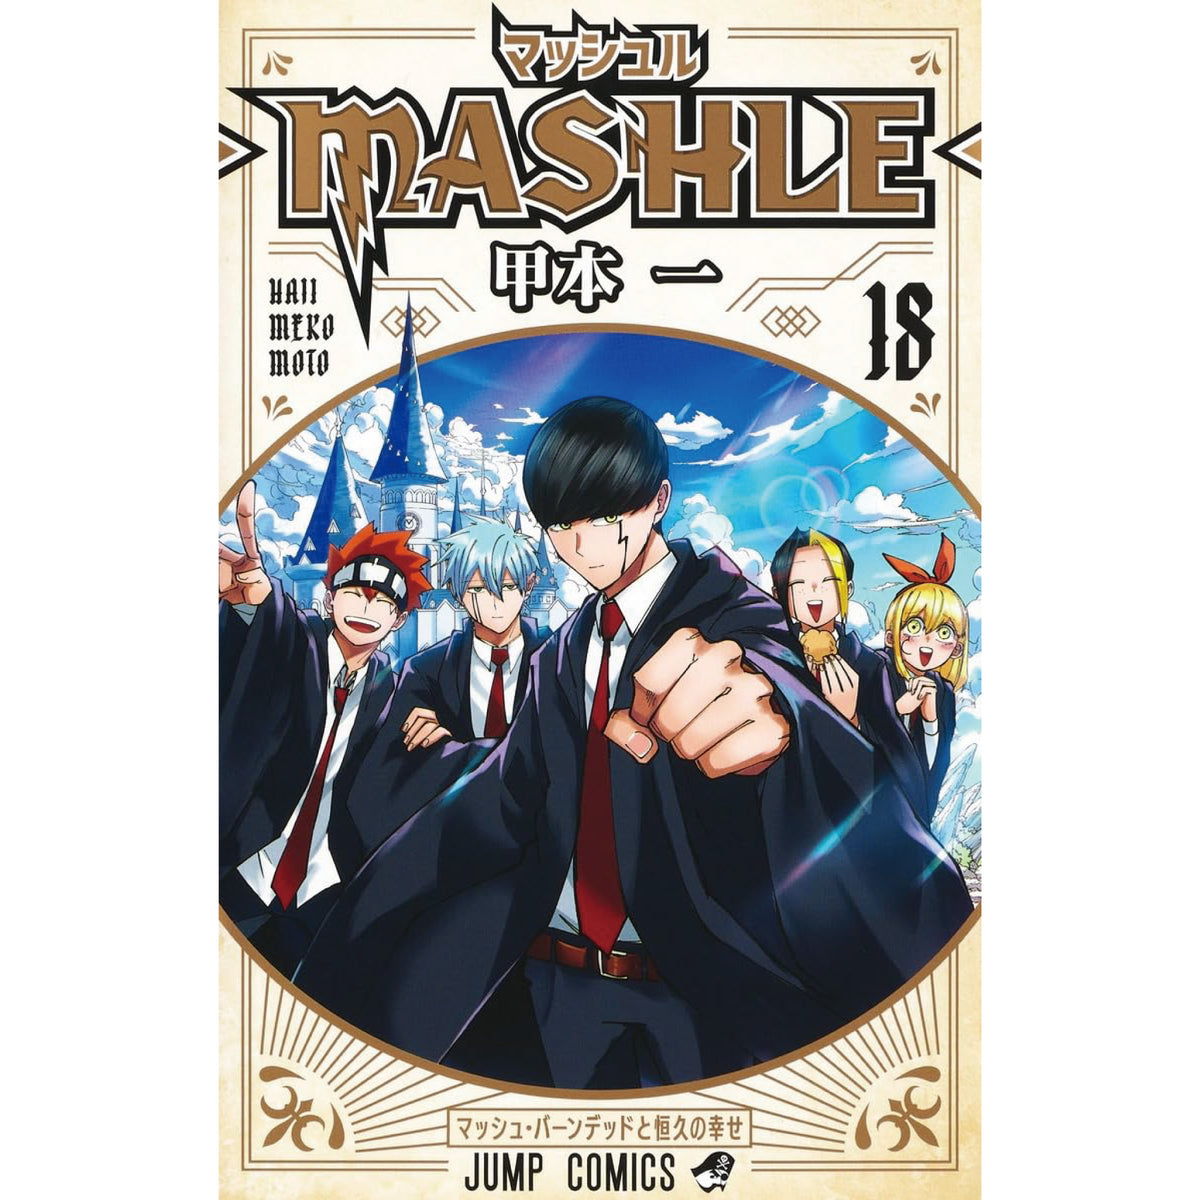 少年ジャンプマッシュル―MASHLE― 1巻〜16巻セット - 少年漫画